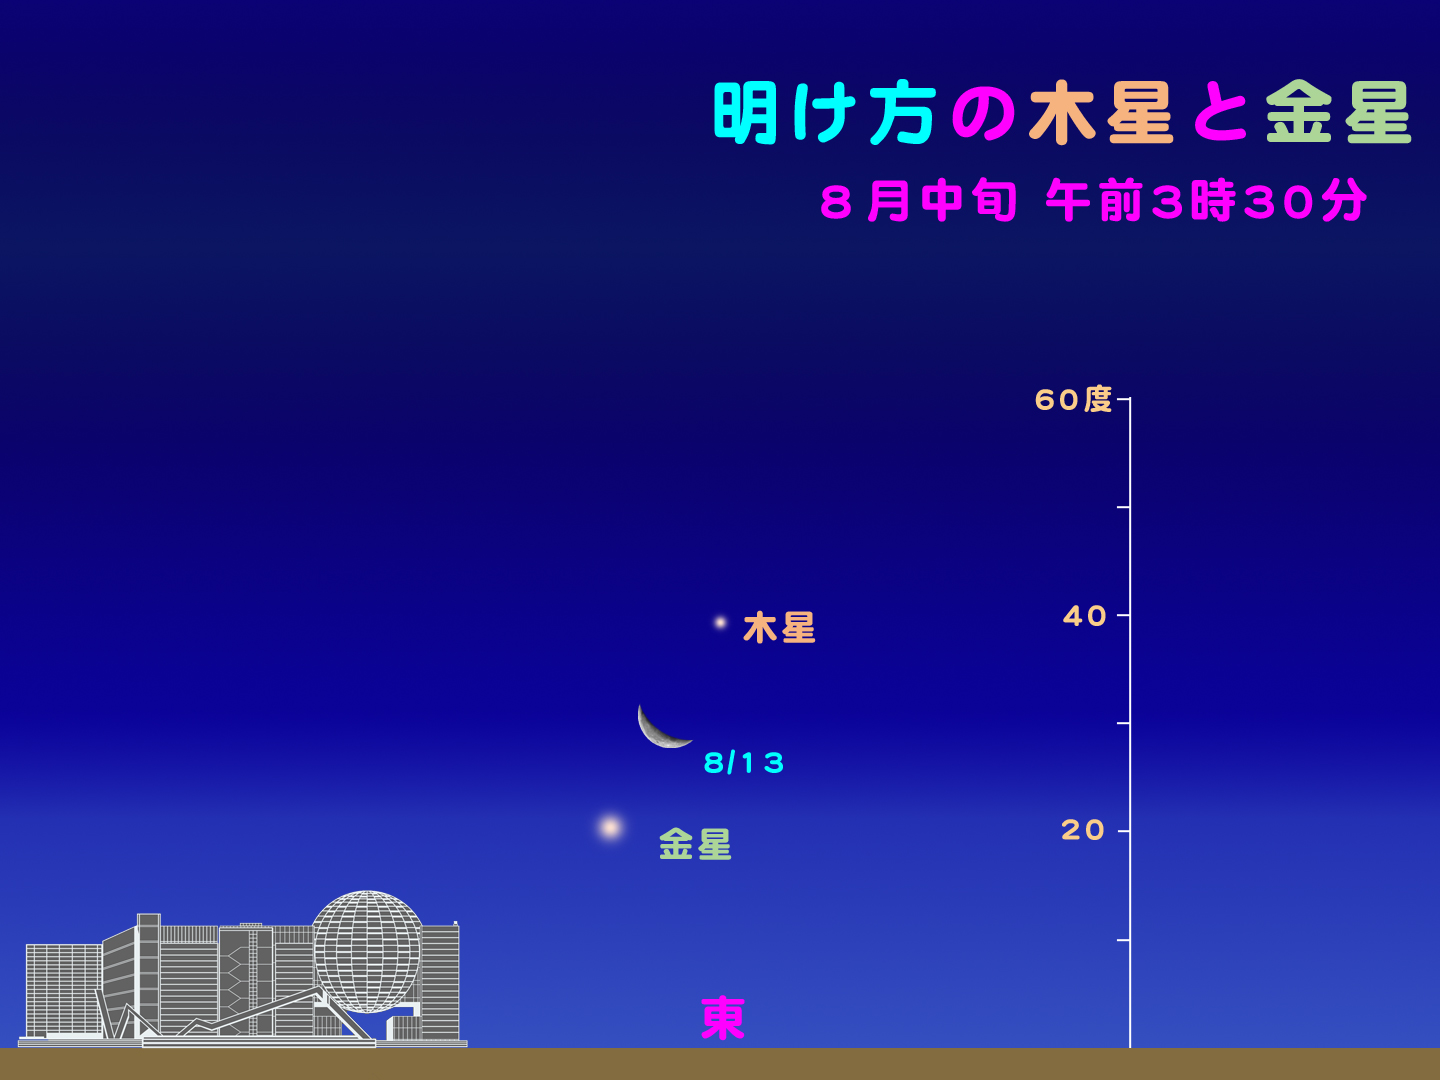 http://www.ncsm.city.nagoya.jp/study/astro/20120813%E6%9C%A8%E6%98%9F%E9%87%91%E6%98%9F.jpg